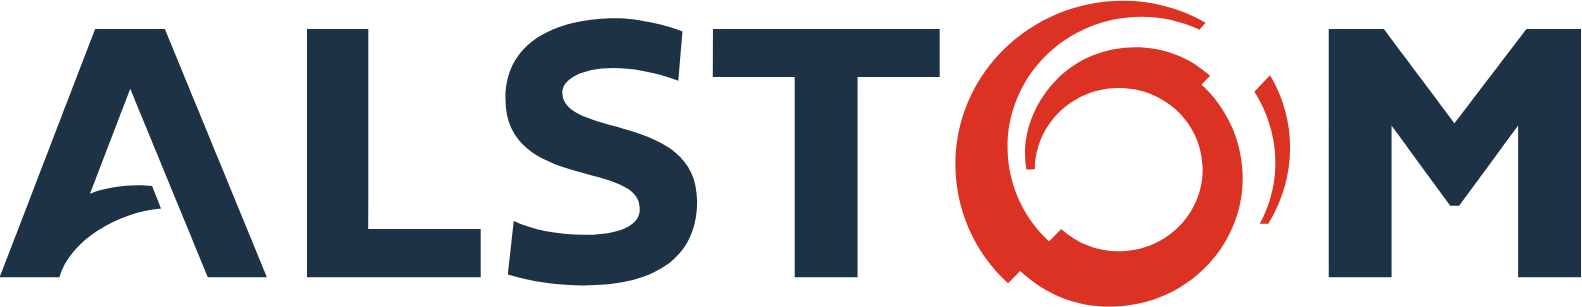 Alstom logo large (transparent PNG)